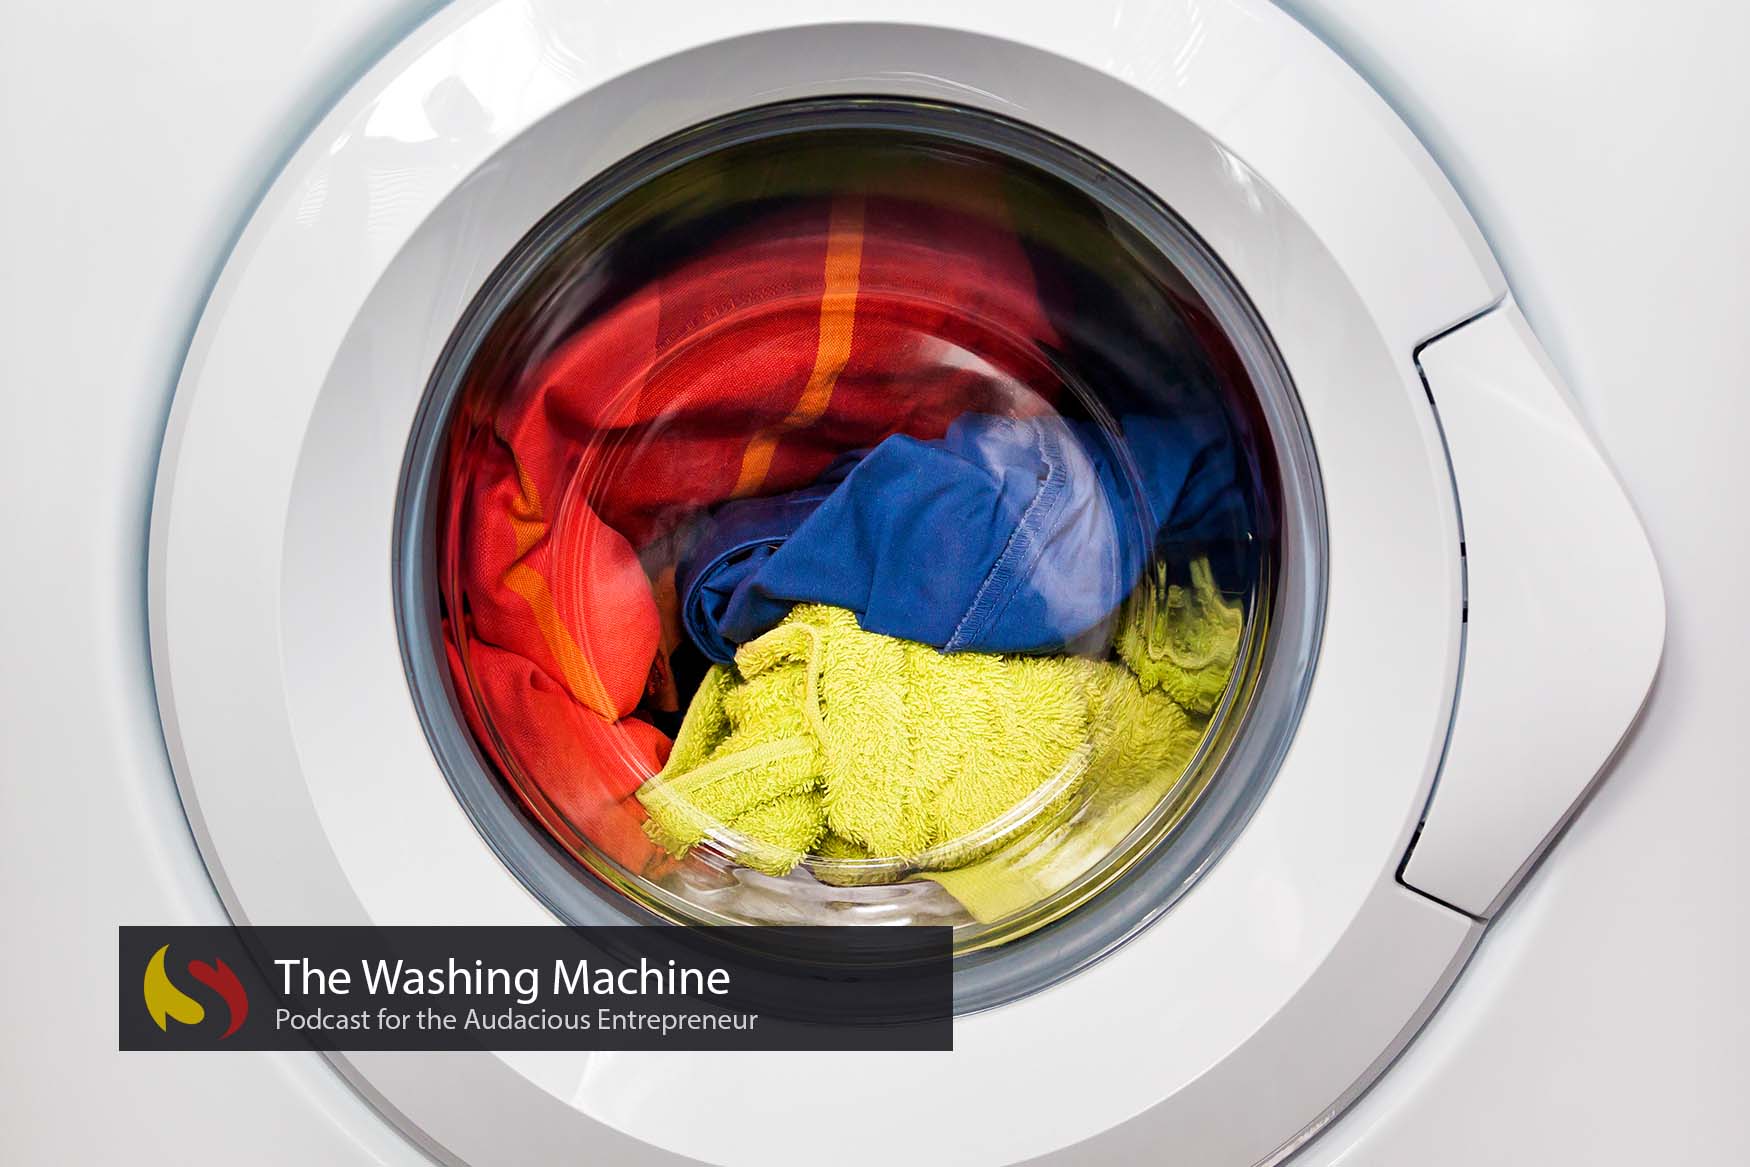 Стиральная машинка стирает белье